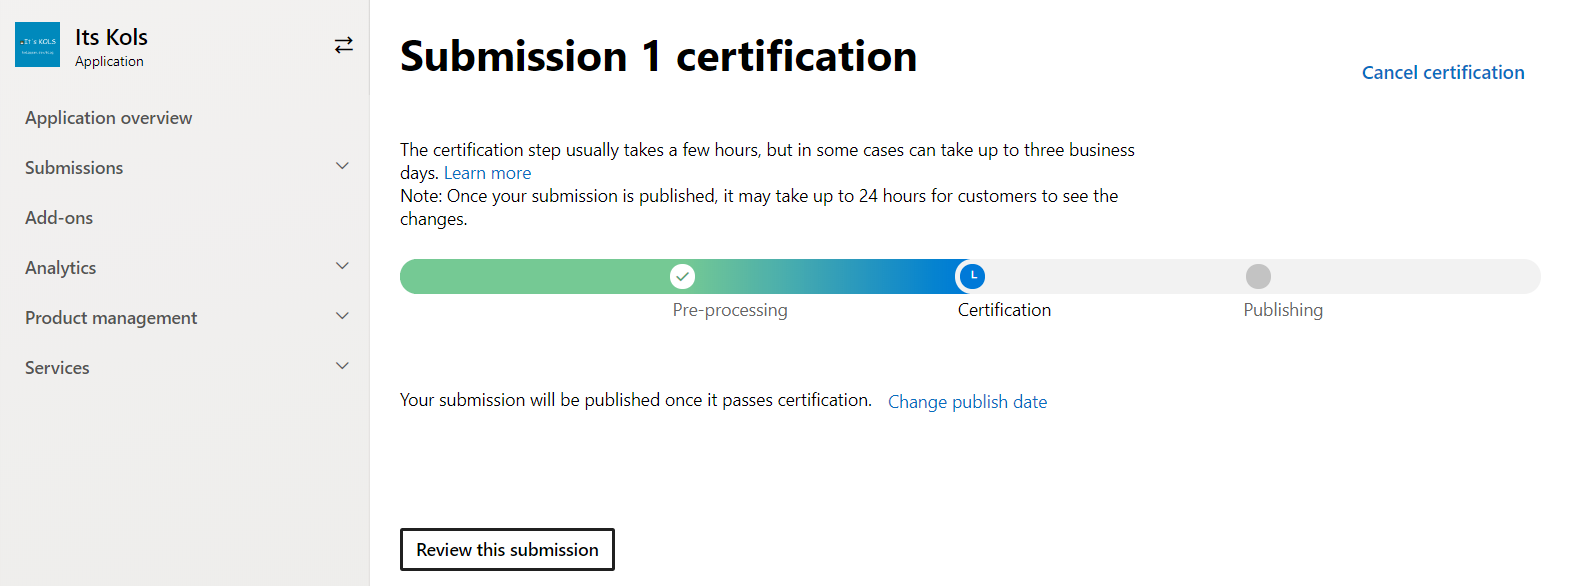 MS Partner Centre - App Certification Progress